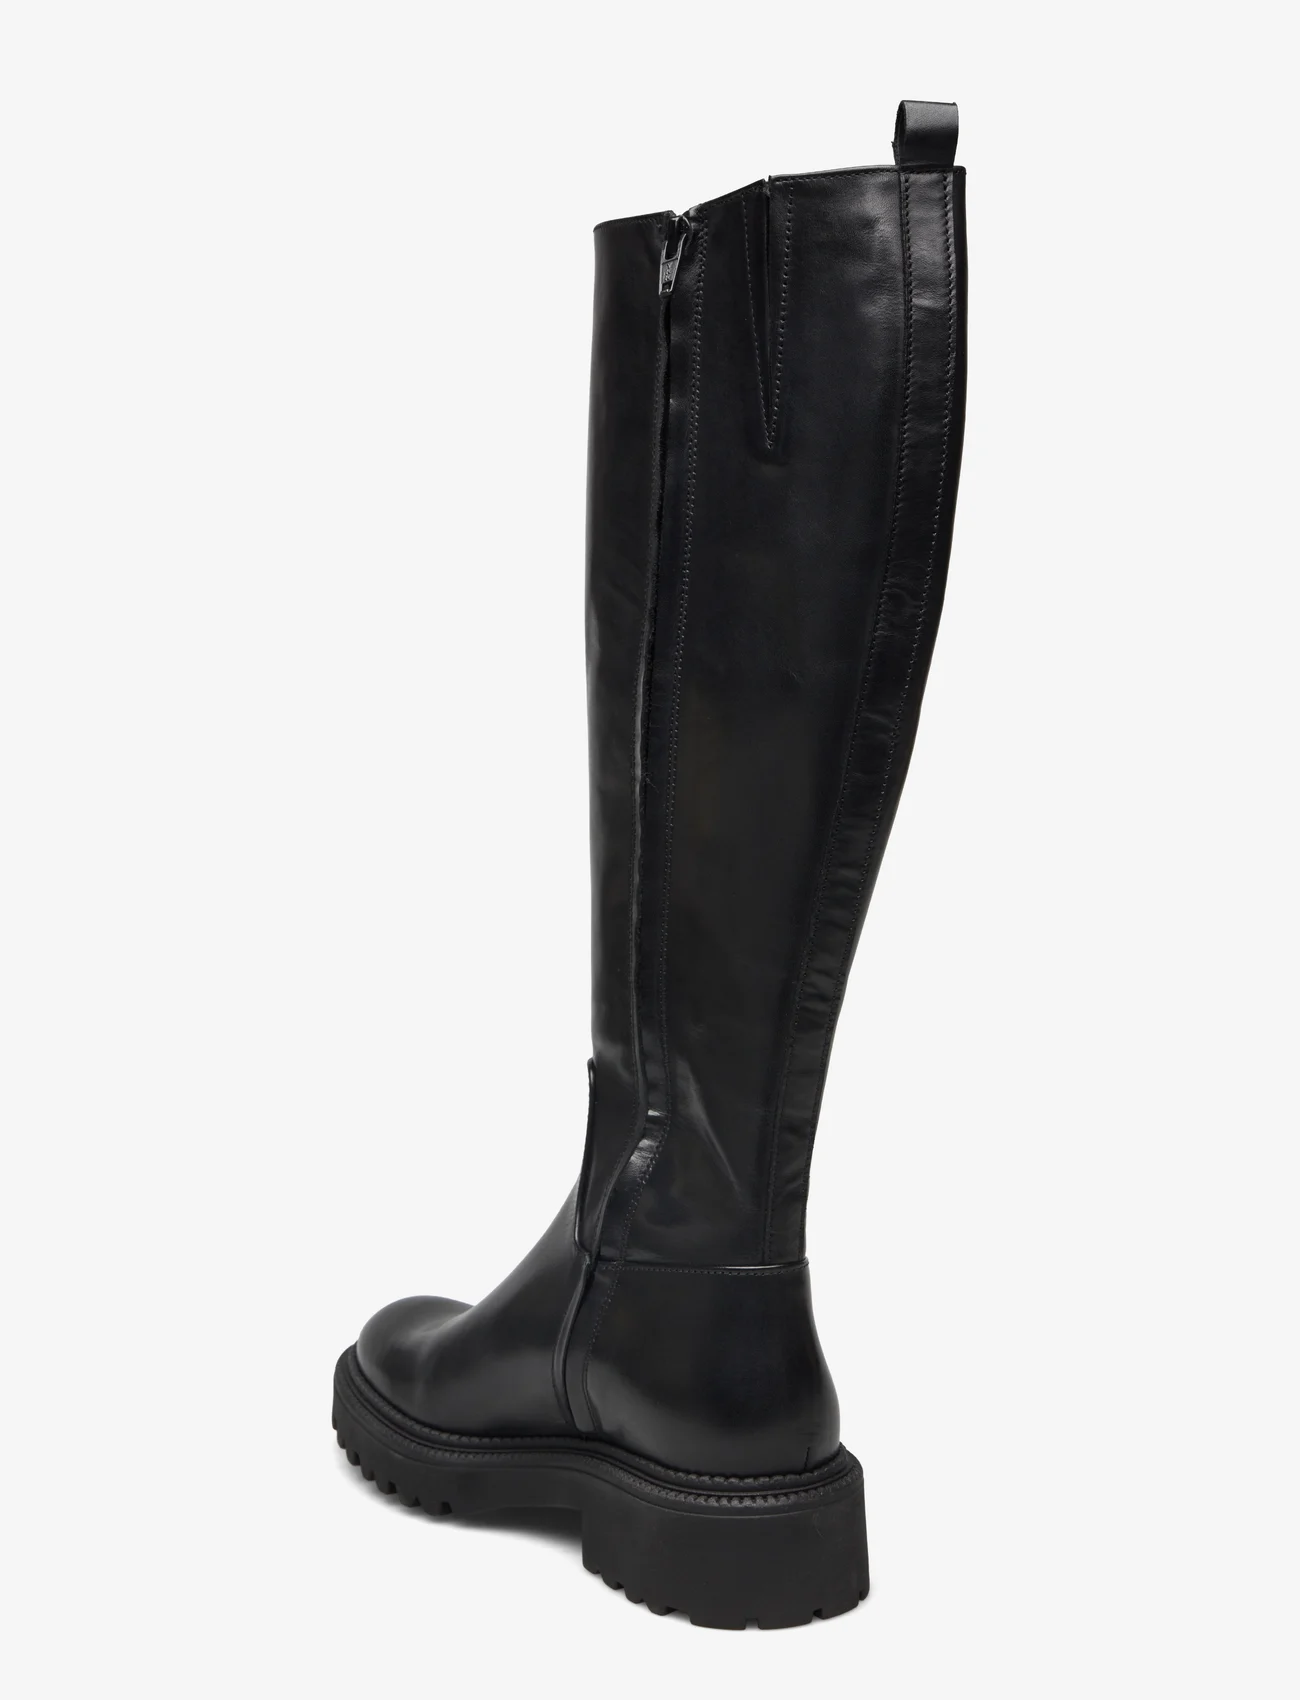 Billi Bi - Boots - kniehohe stiefel - black calf - 1